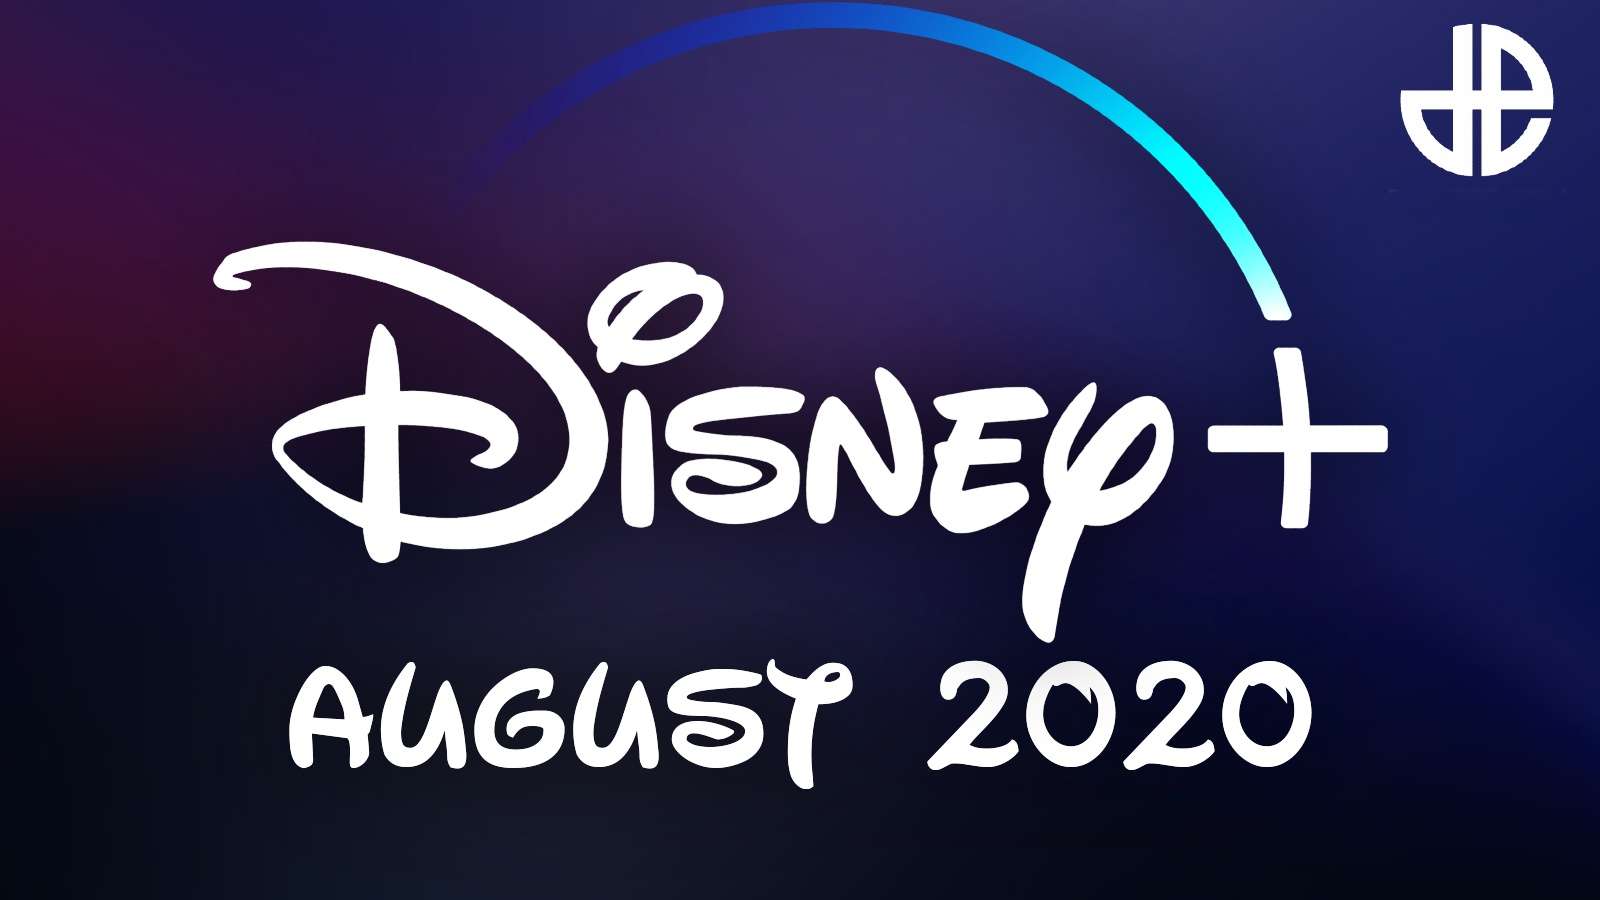 Disney Plus August 2020